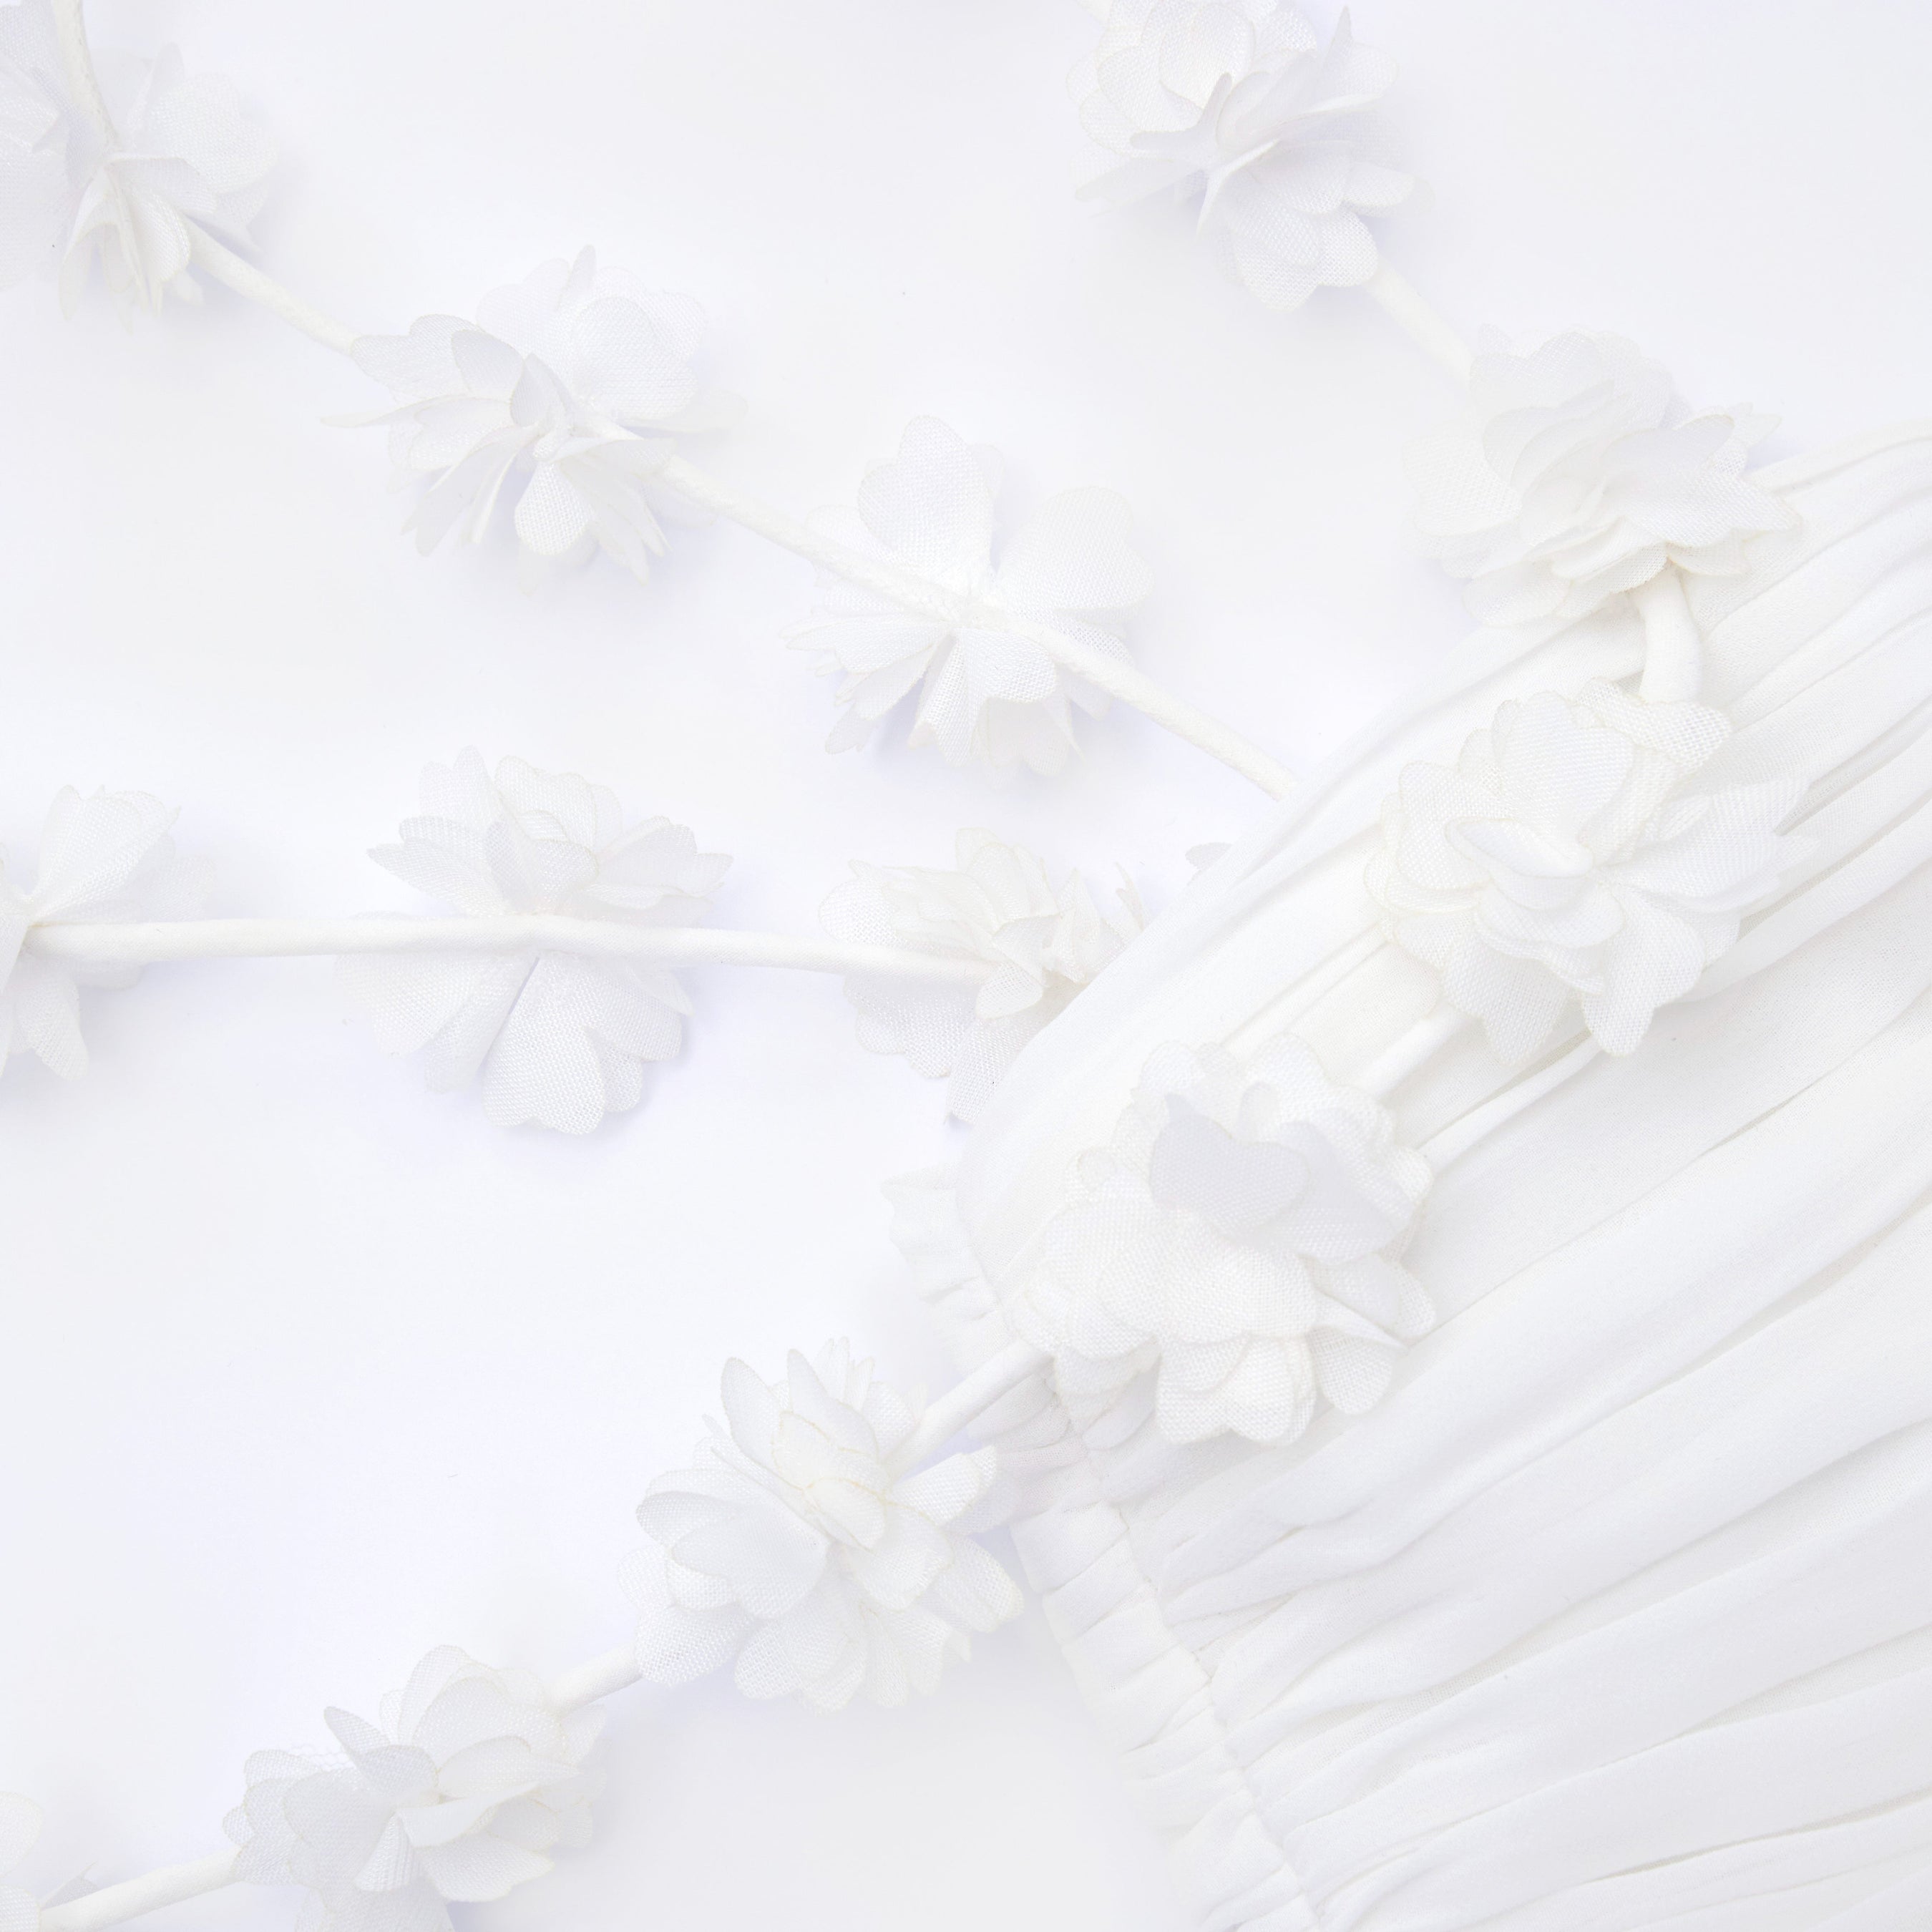 White Chiffon Flower Maxi Dress